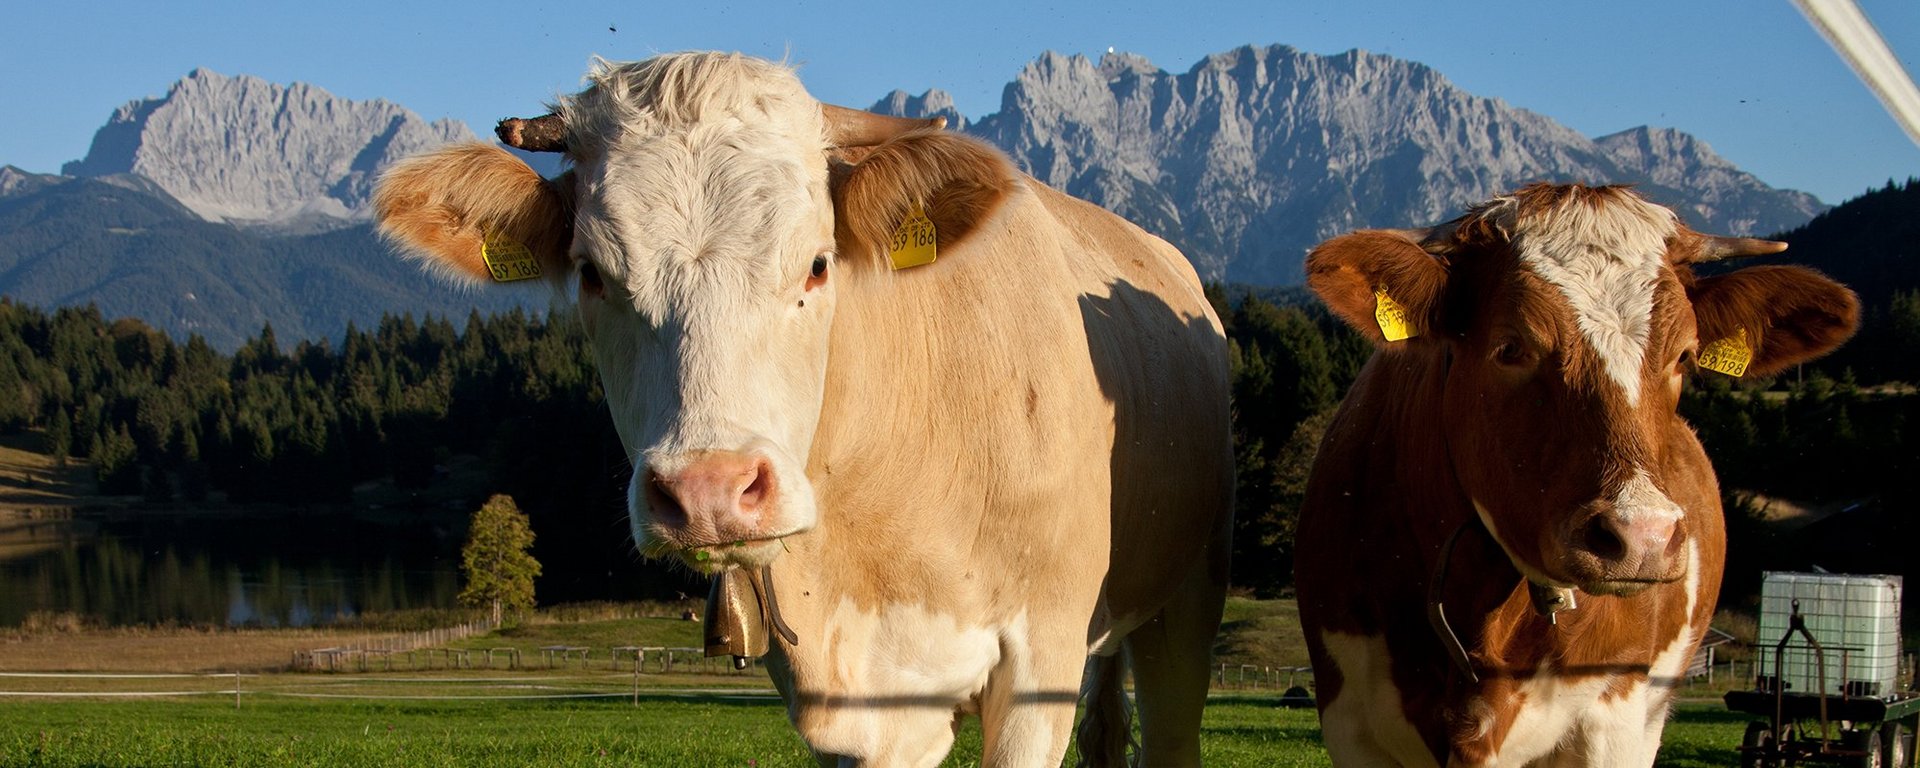 Kühe in der Zugspitz Region vor Karwendelgebirge 